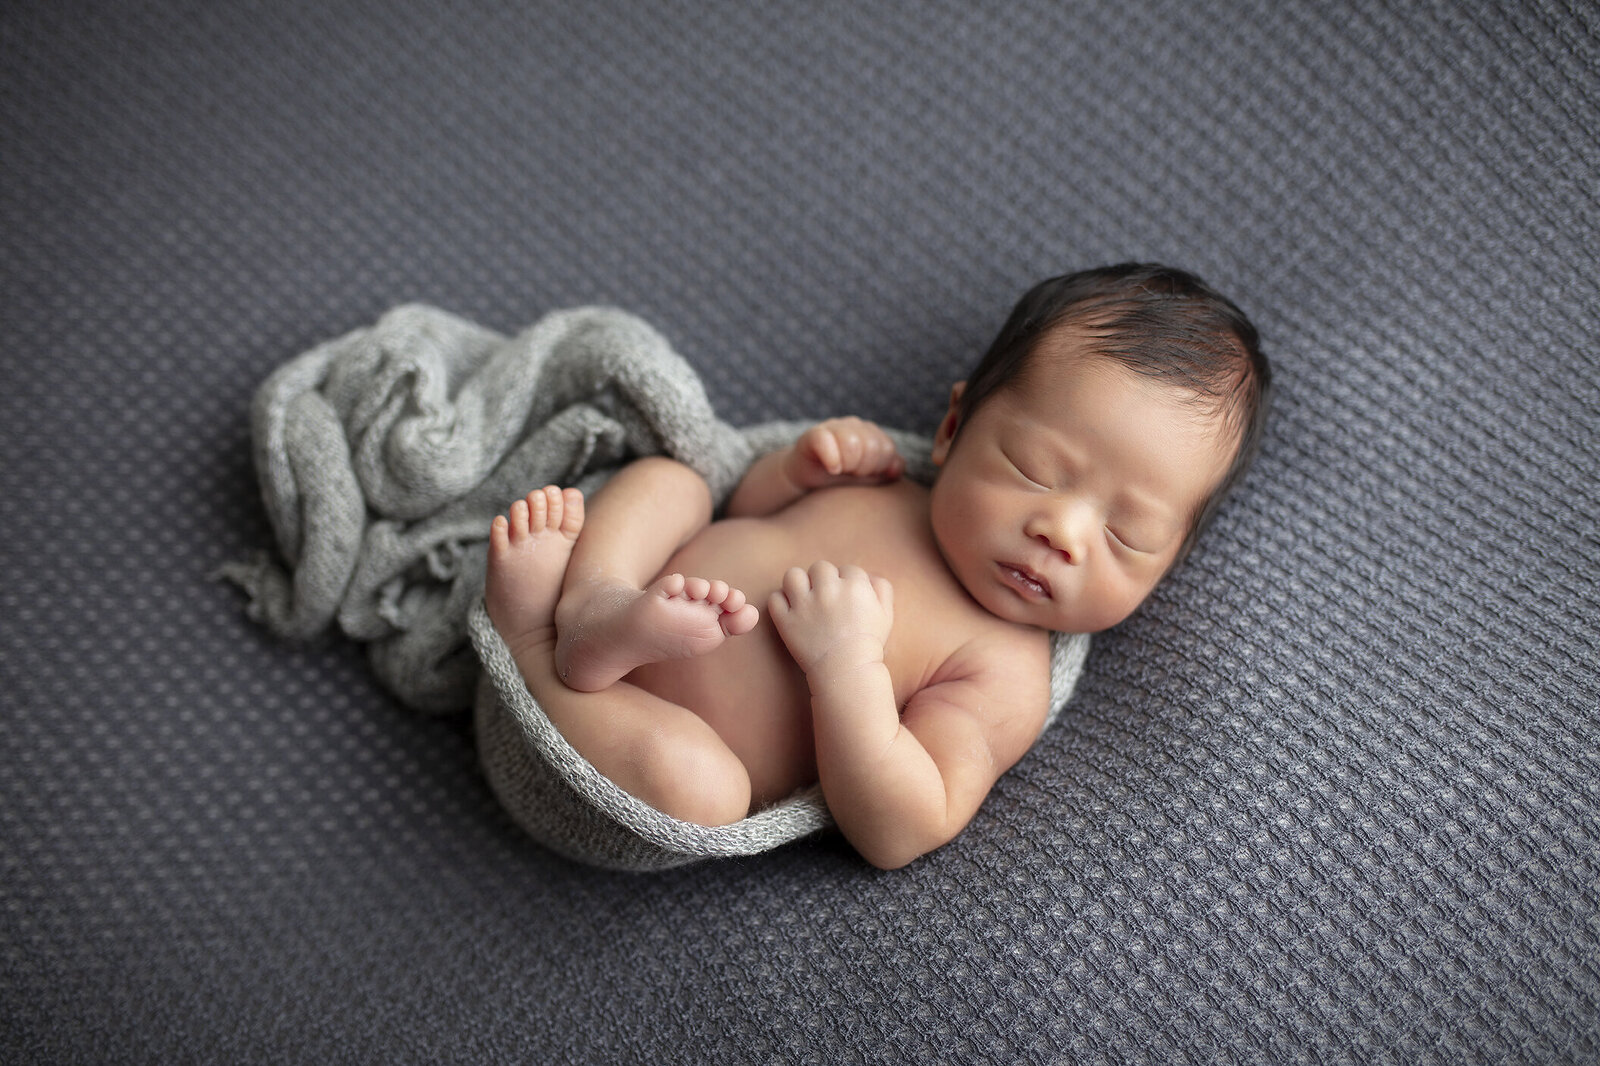 Newborn boy on grey fabric in Dallas, Texas.